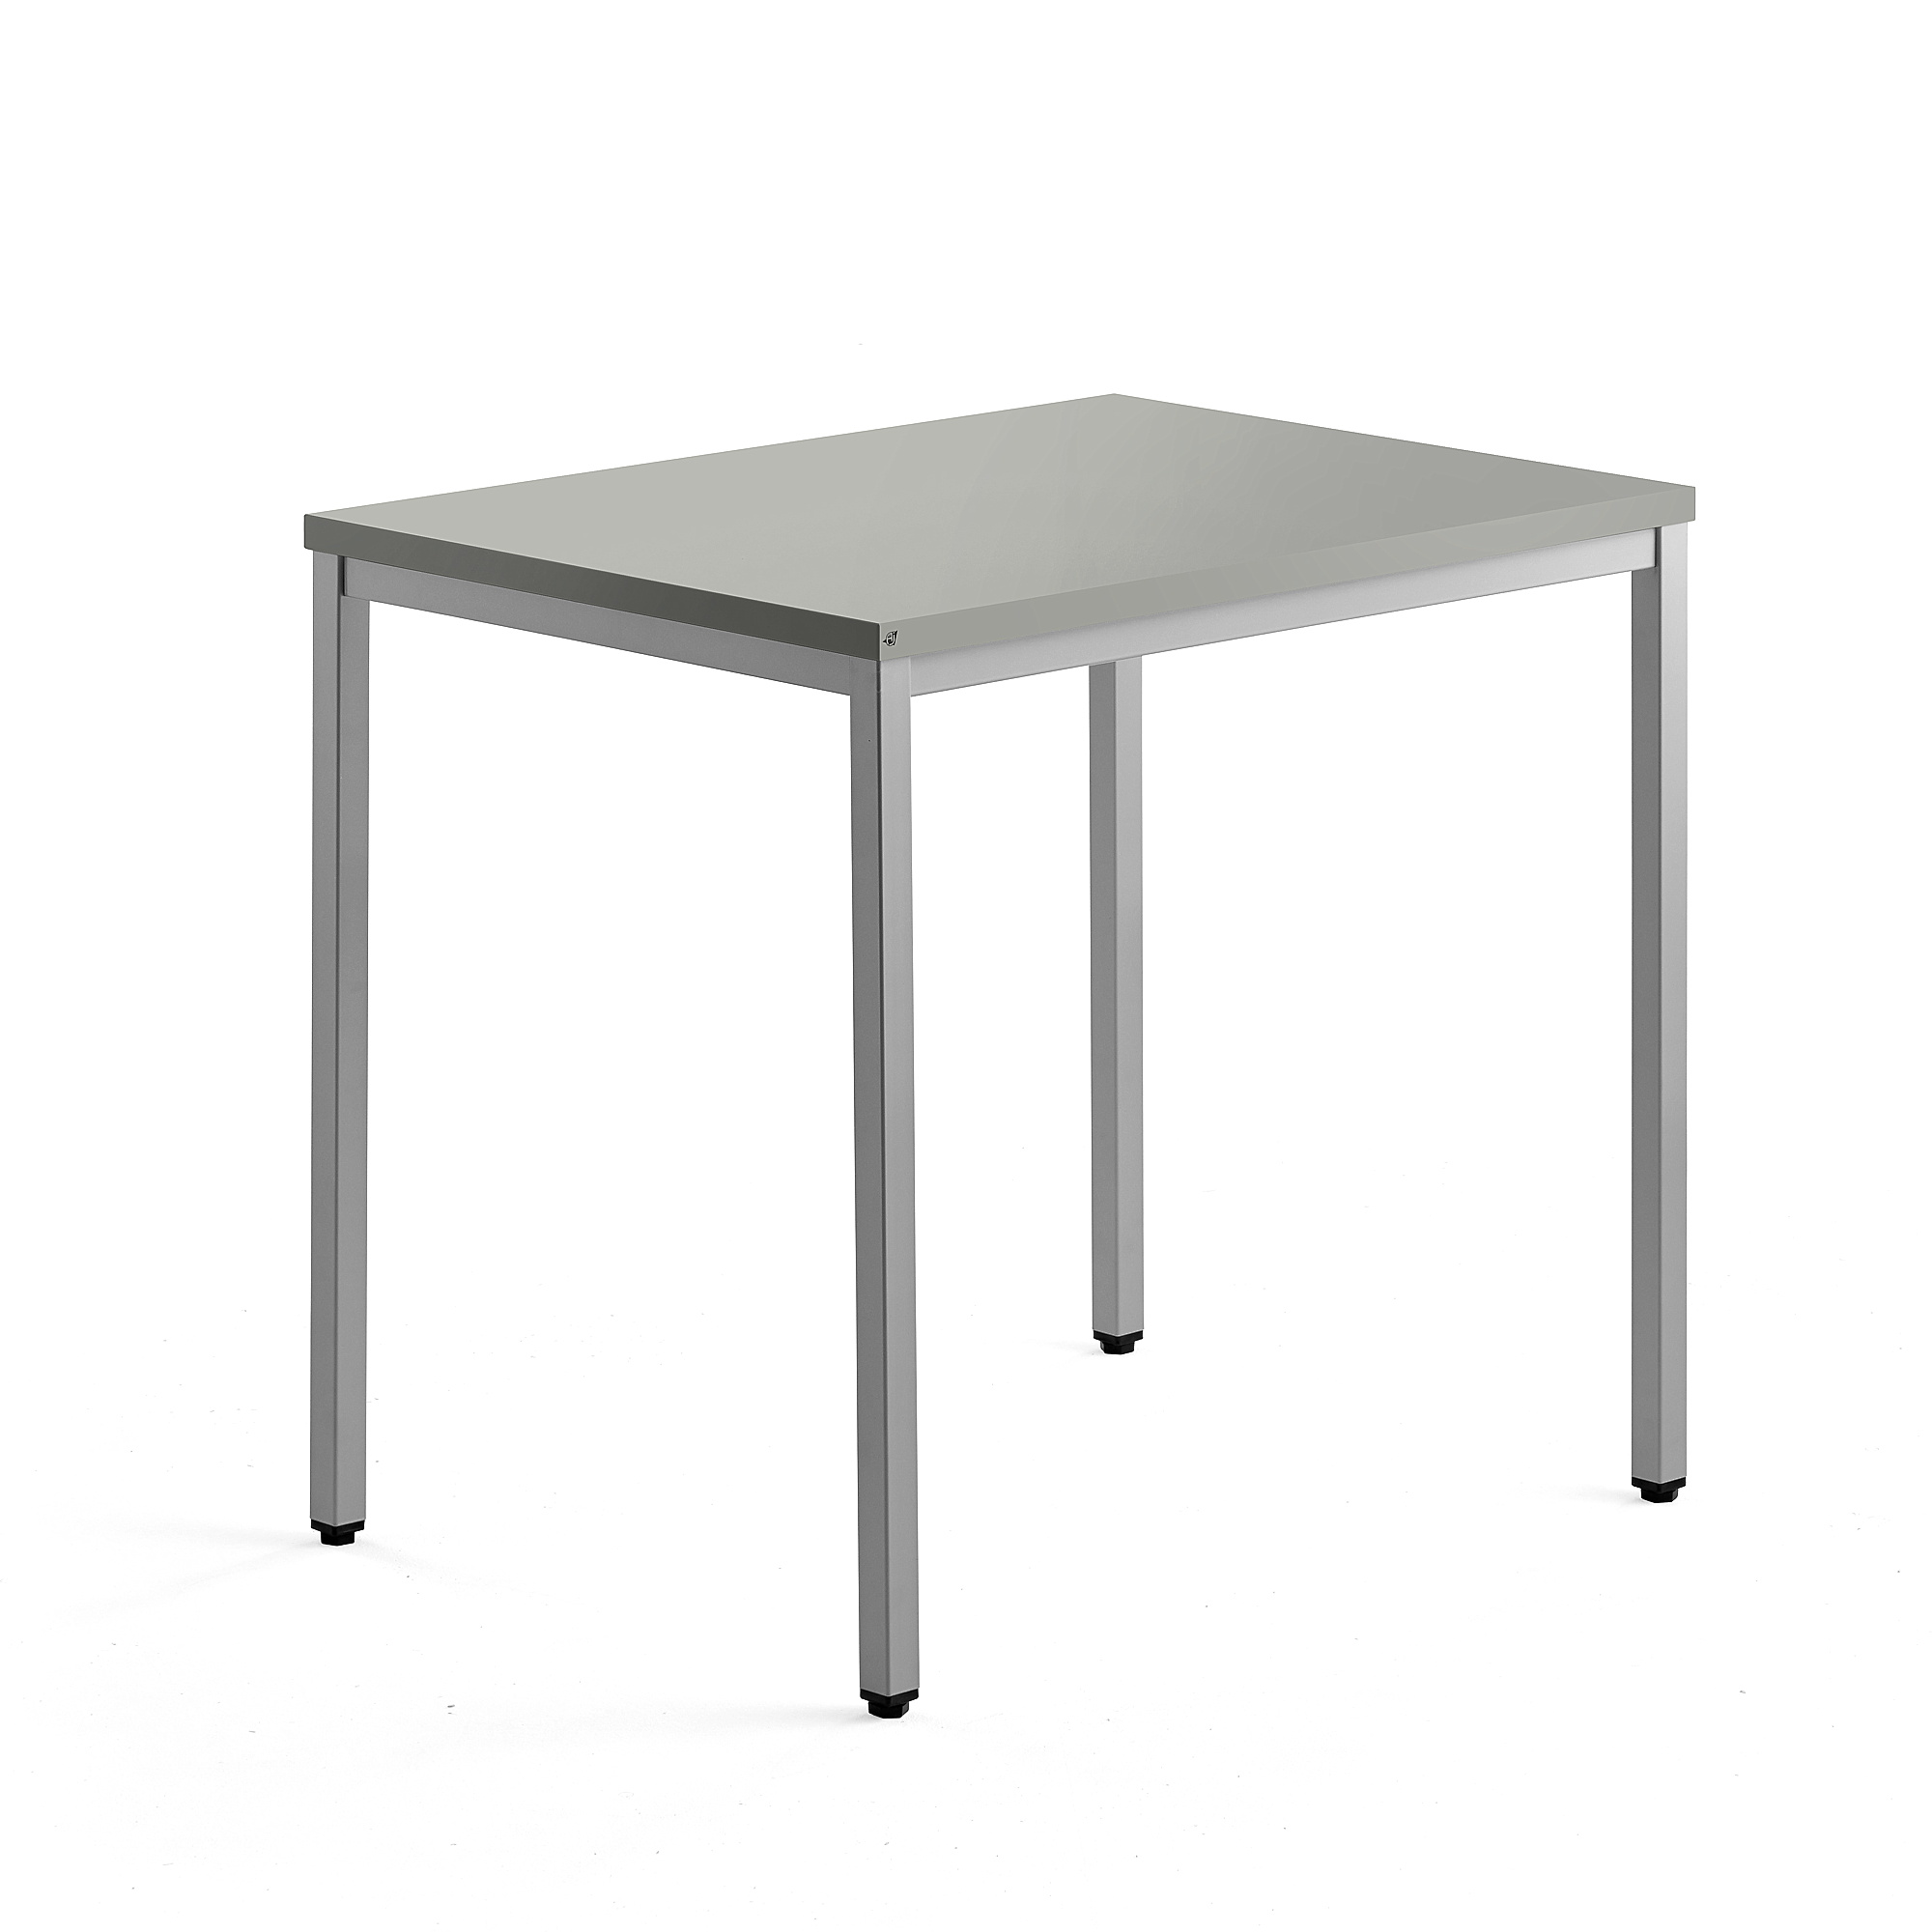 Přídavný stůl QBUS, 4 nohy, 800x600 mm, stříbrný rám, světle šedá